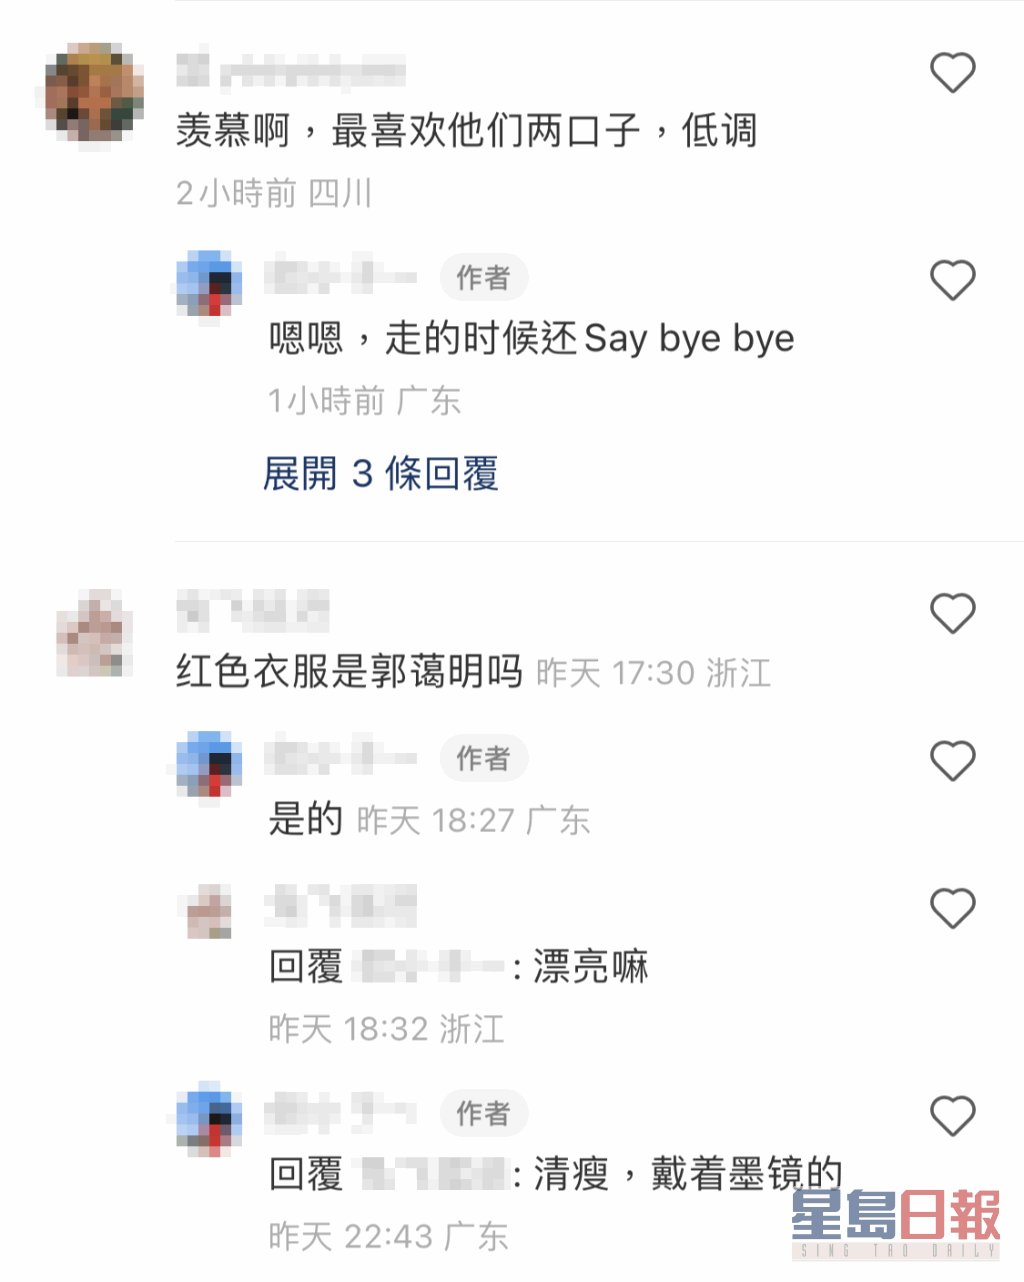 不少網民留言表示羨慕，貼相的網民還透露劉青雲夫婦臨別時還跟她說Bye bye。